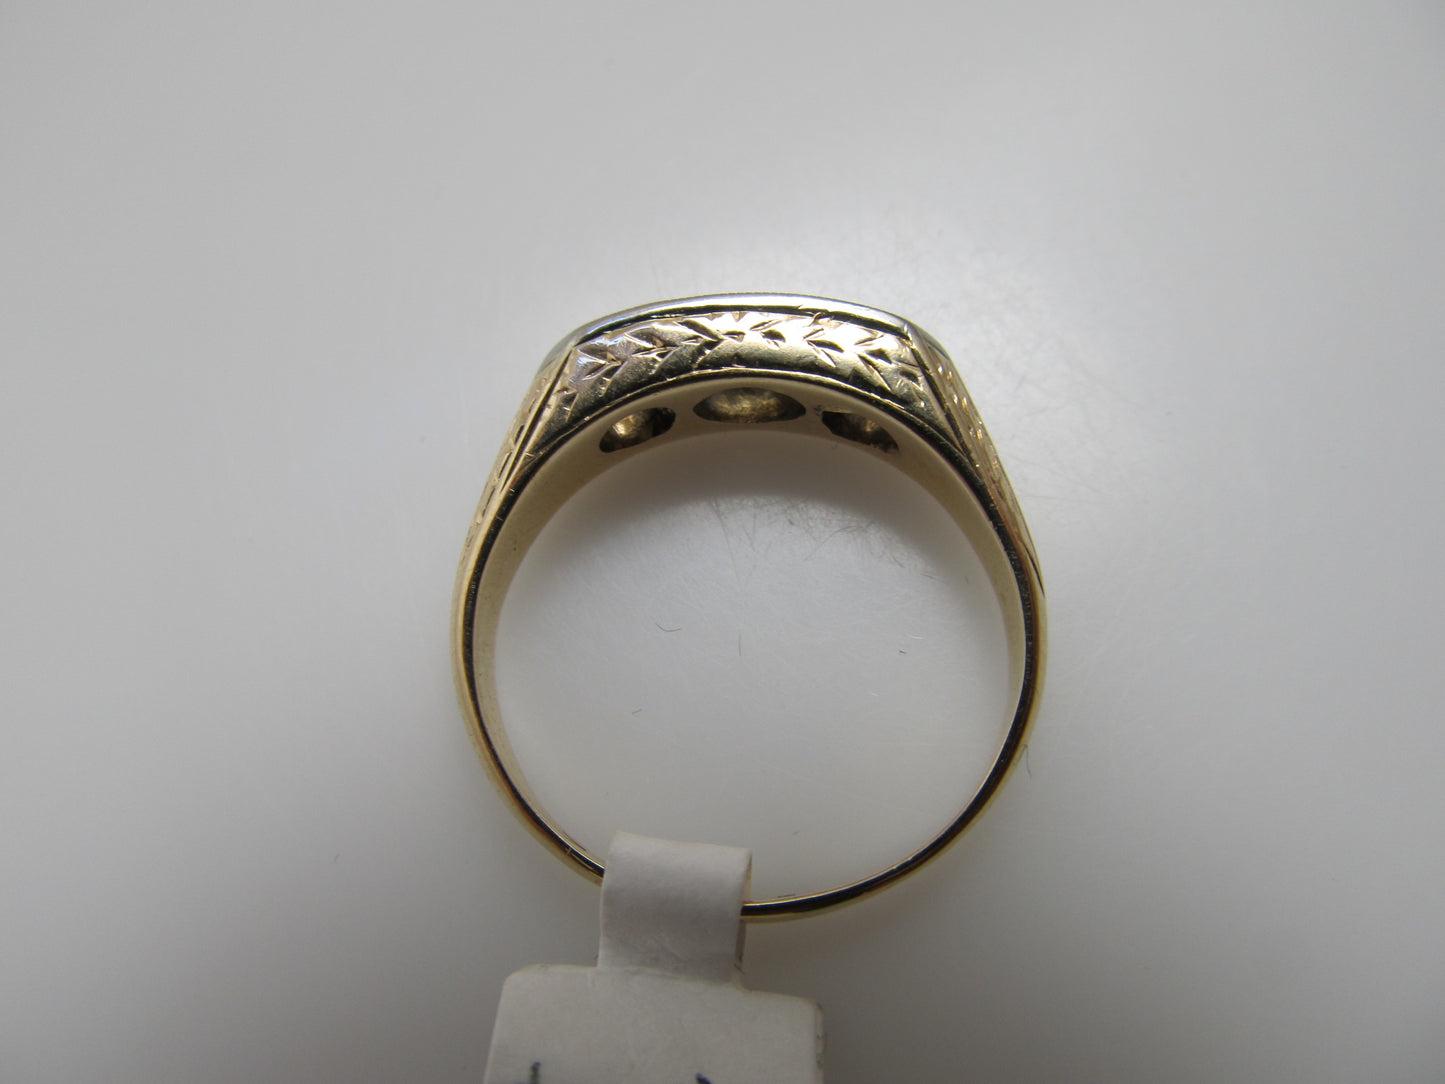 Vintage 3 stone diamond ring, 14k white and yellow gold